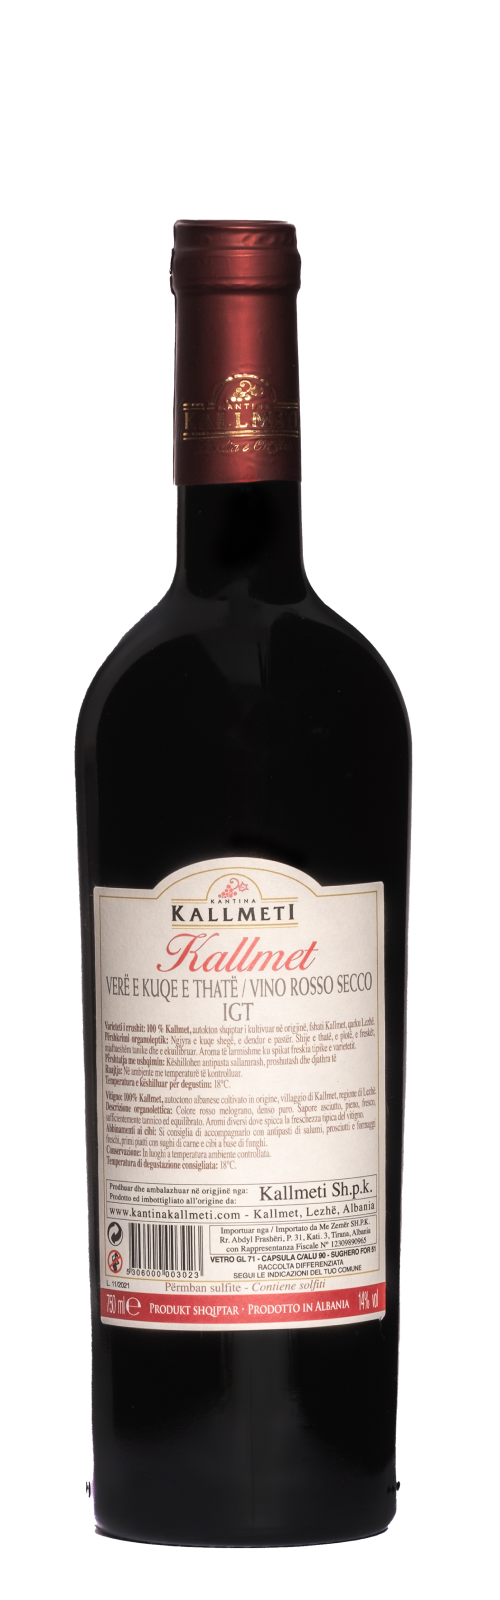 Kallmet Classic 2020 -  14% vol. - KALLMETI Winery